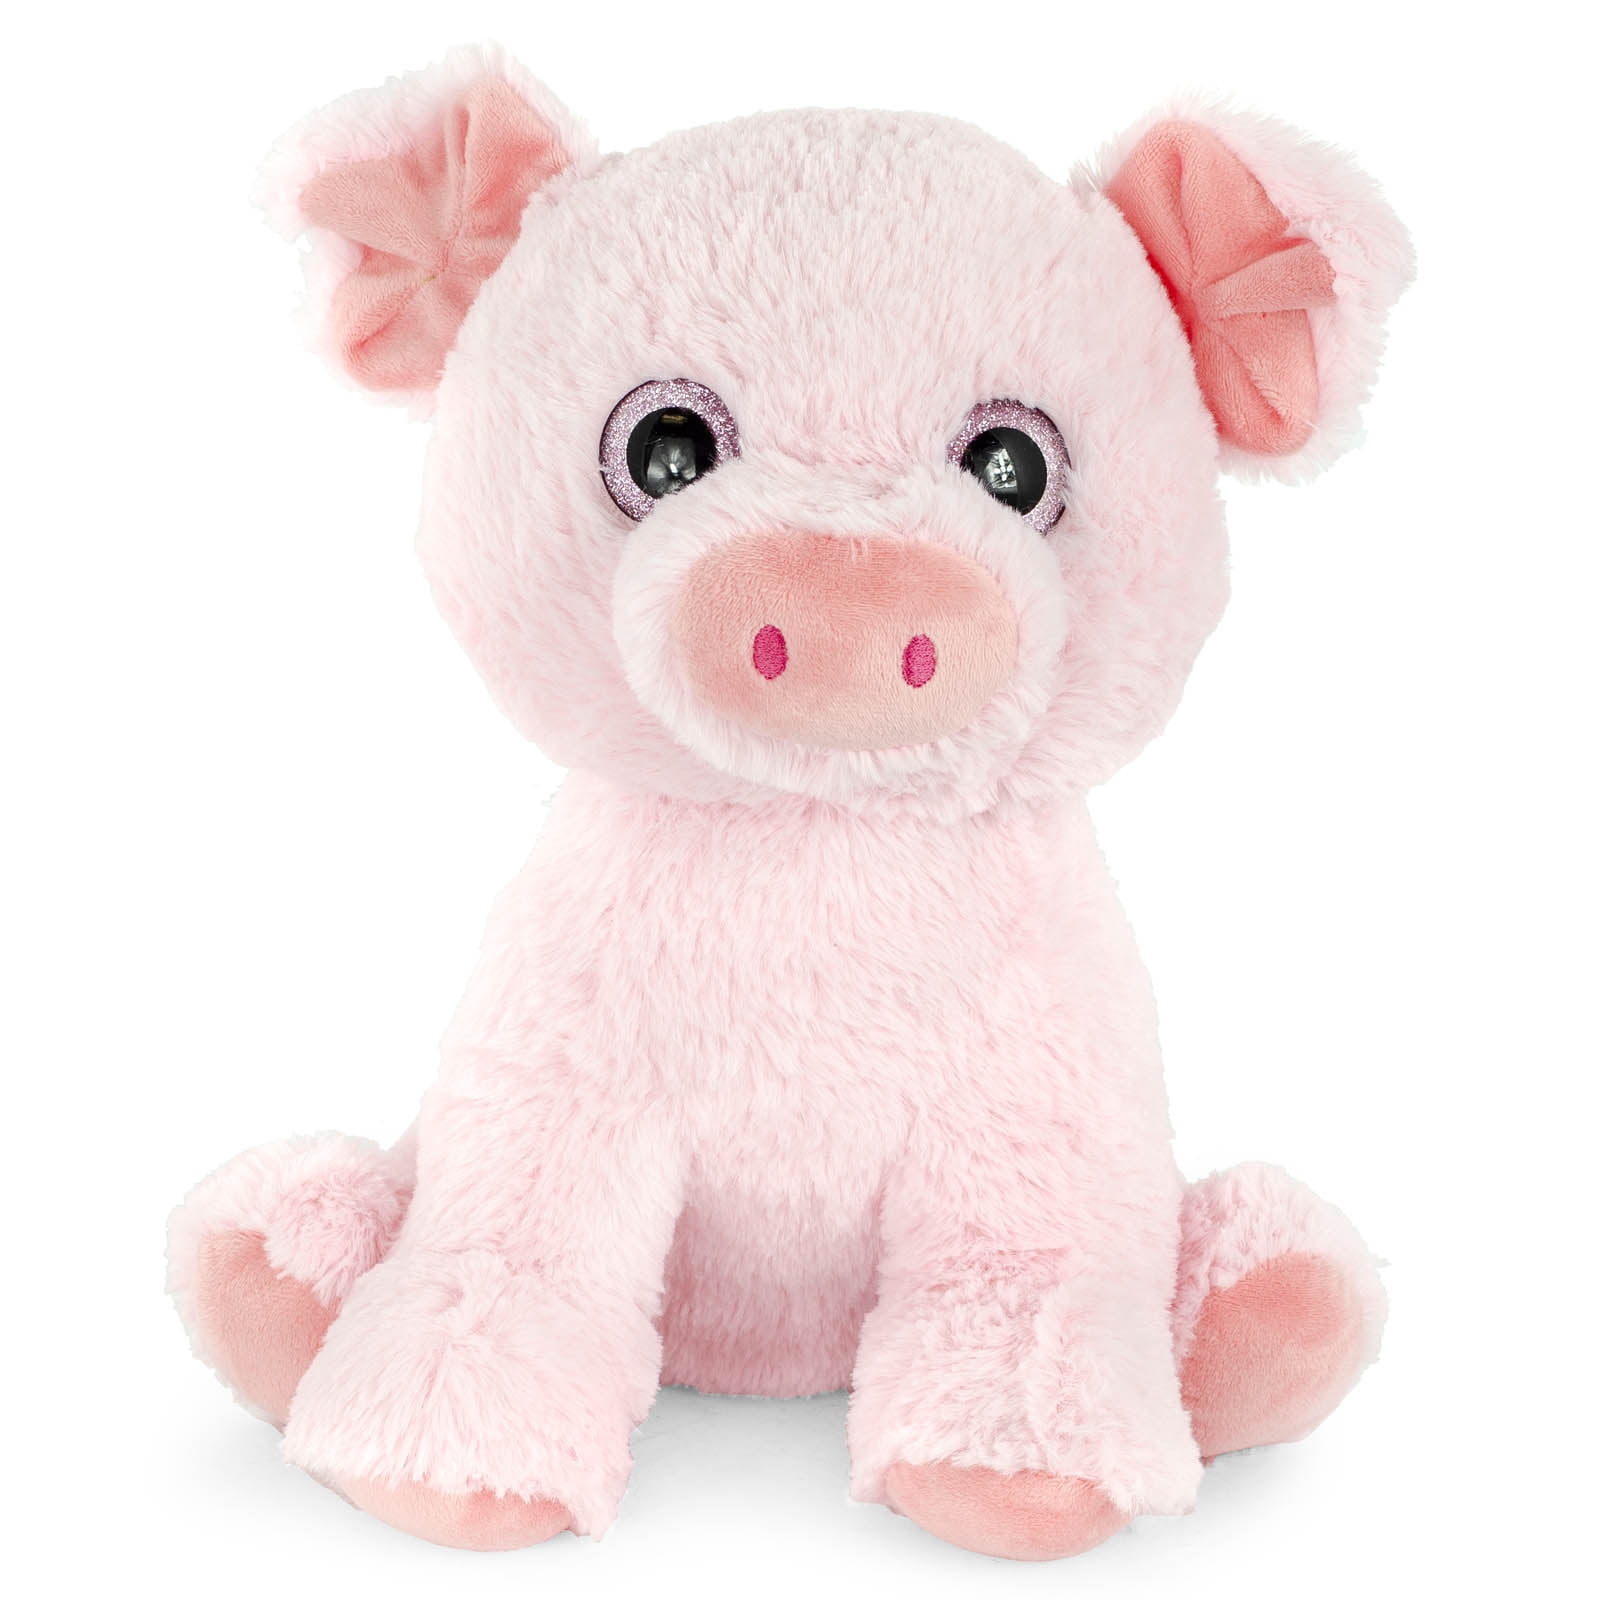 Super Soft Plush Corduroy Cuddle Farm Sitting Pig Stuffed Animal Toy ...